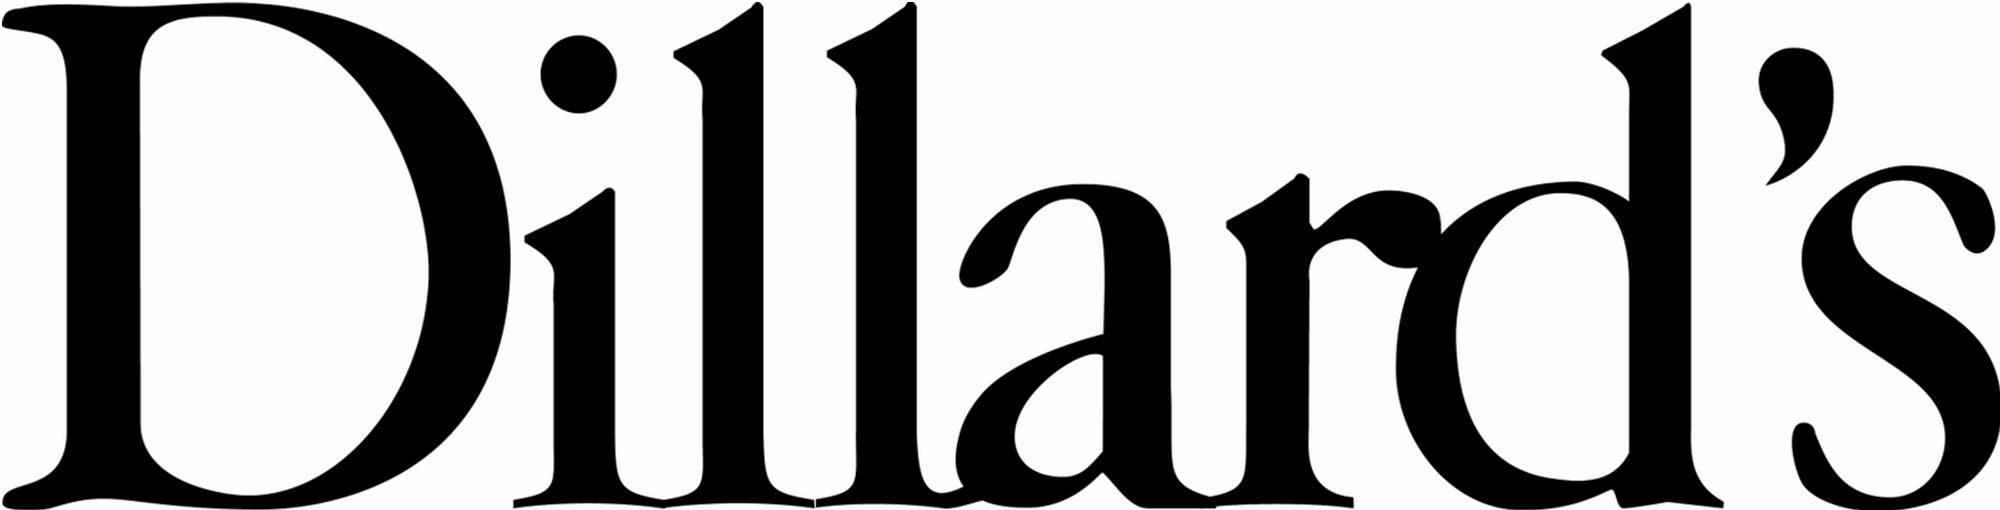 Dillard's Logo